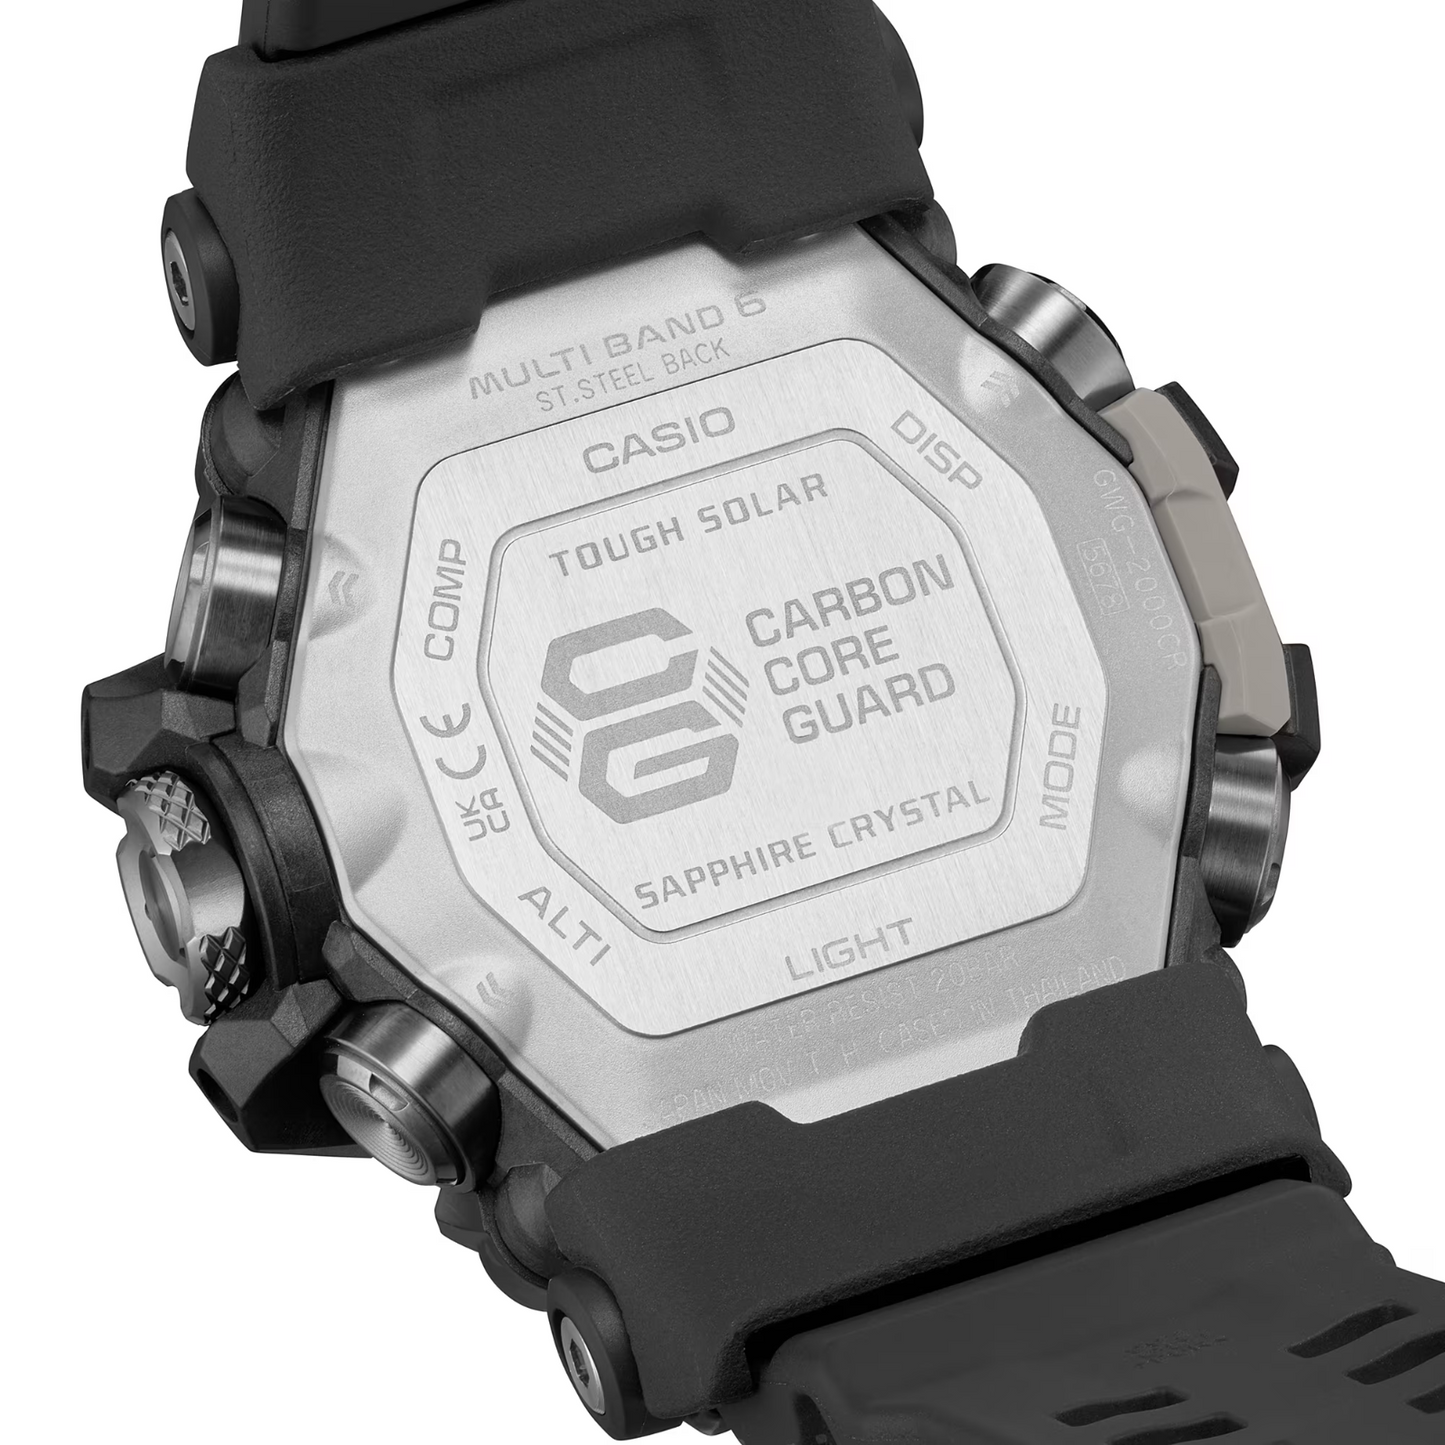 Casio G Shock Mudmaster Triple Sensor Solar Powered Watch GWG-2000CR-1ADR